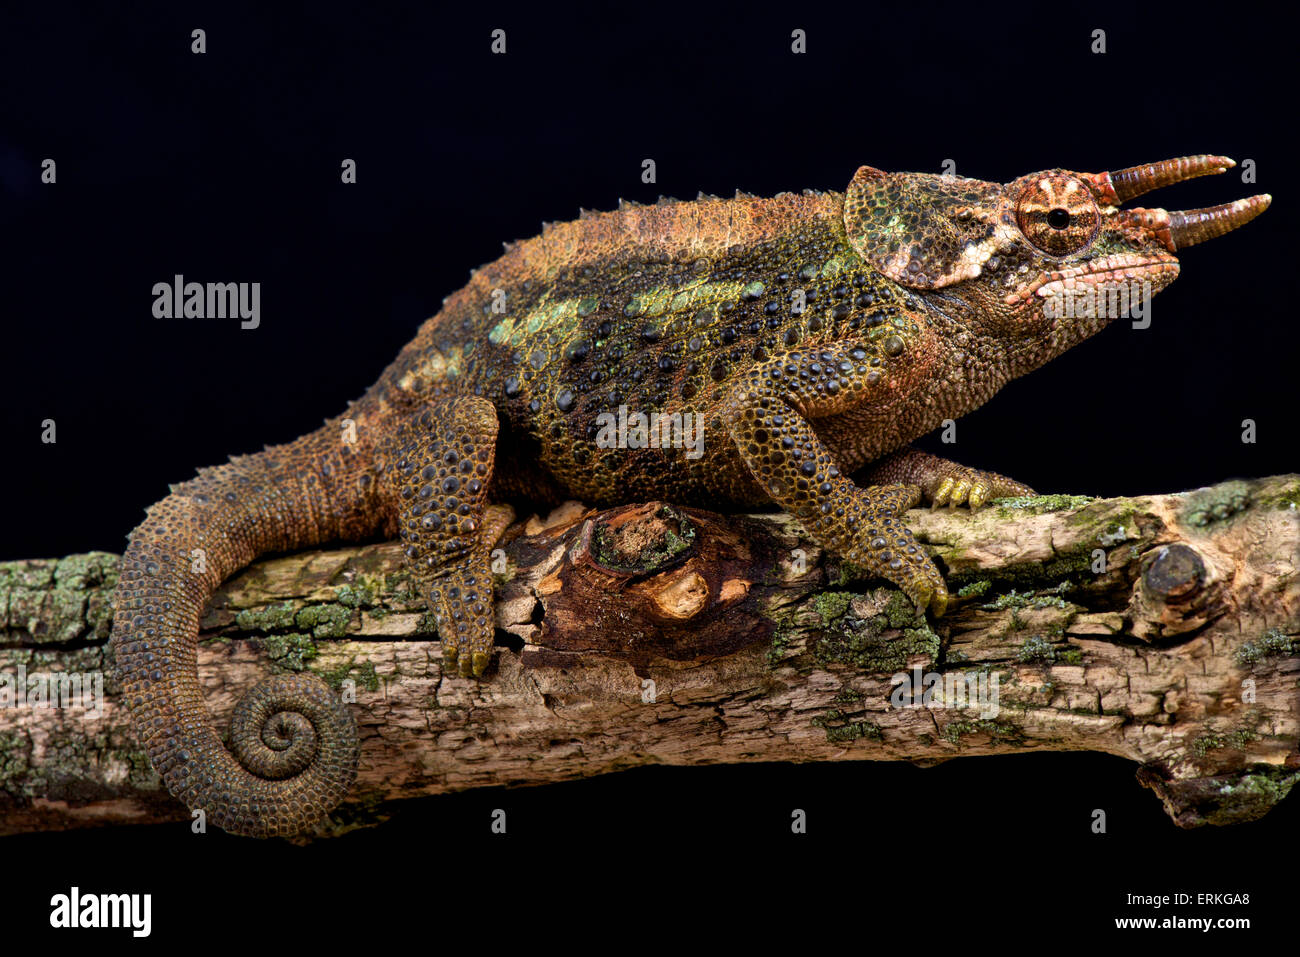 Werners chameleon (Trioceros werneri) Stock Photo